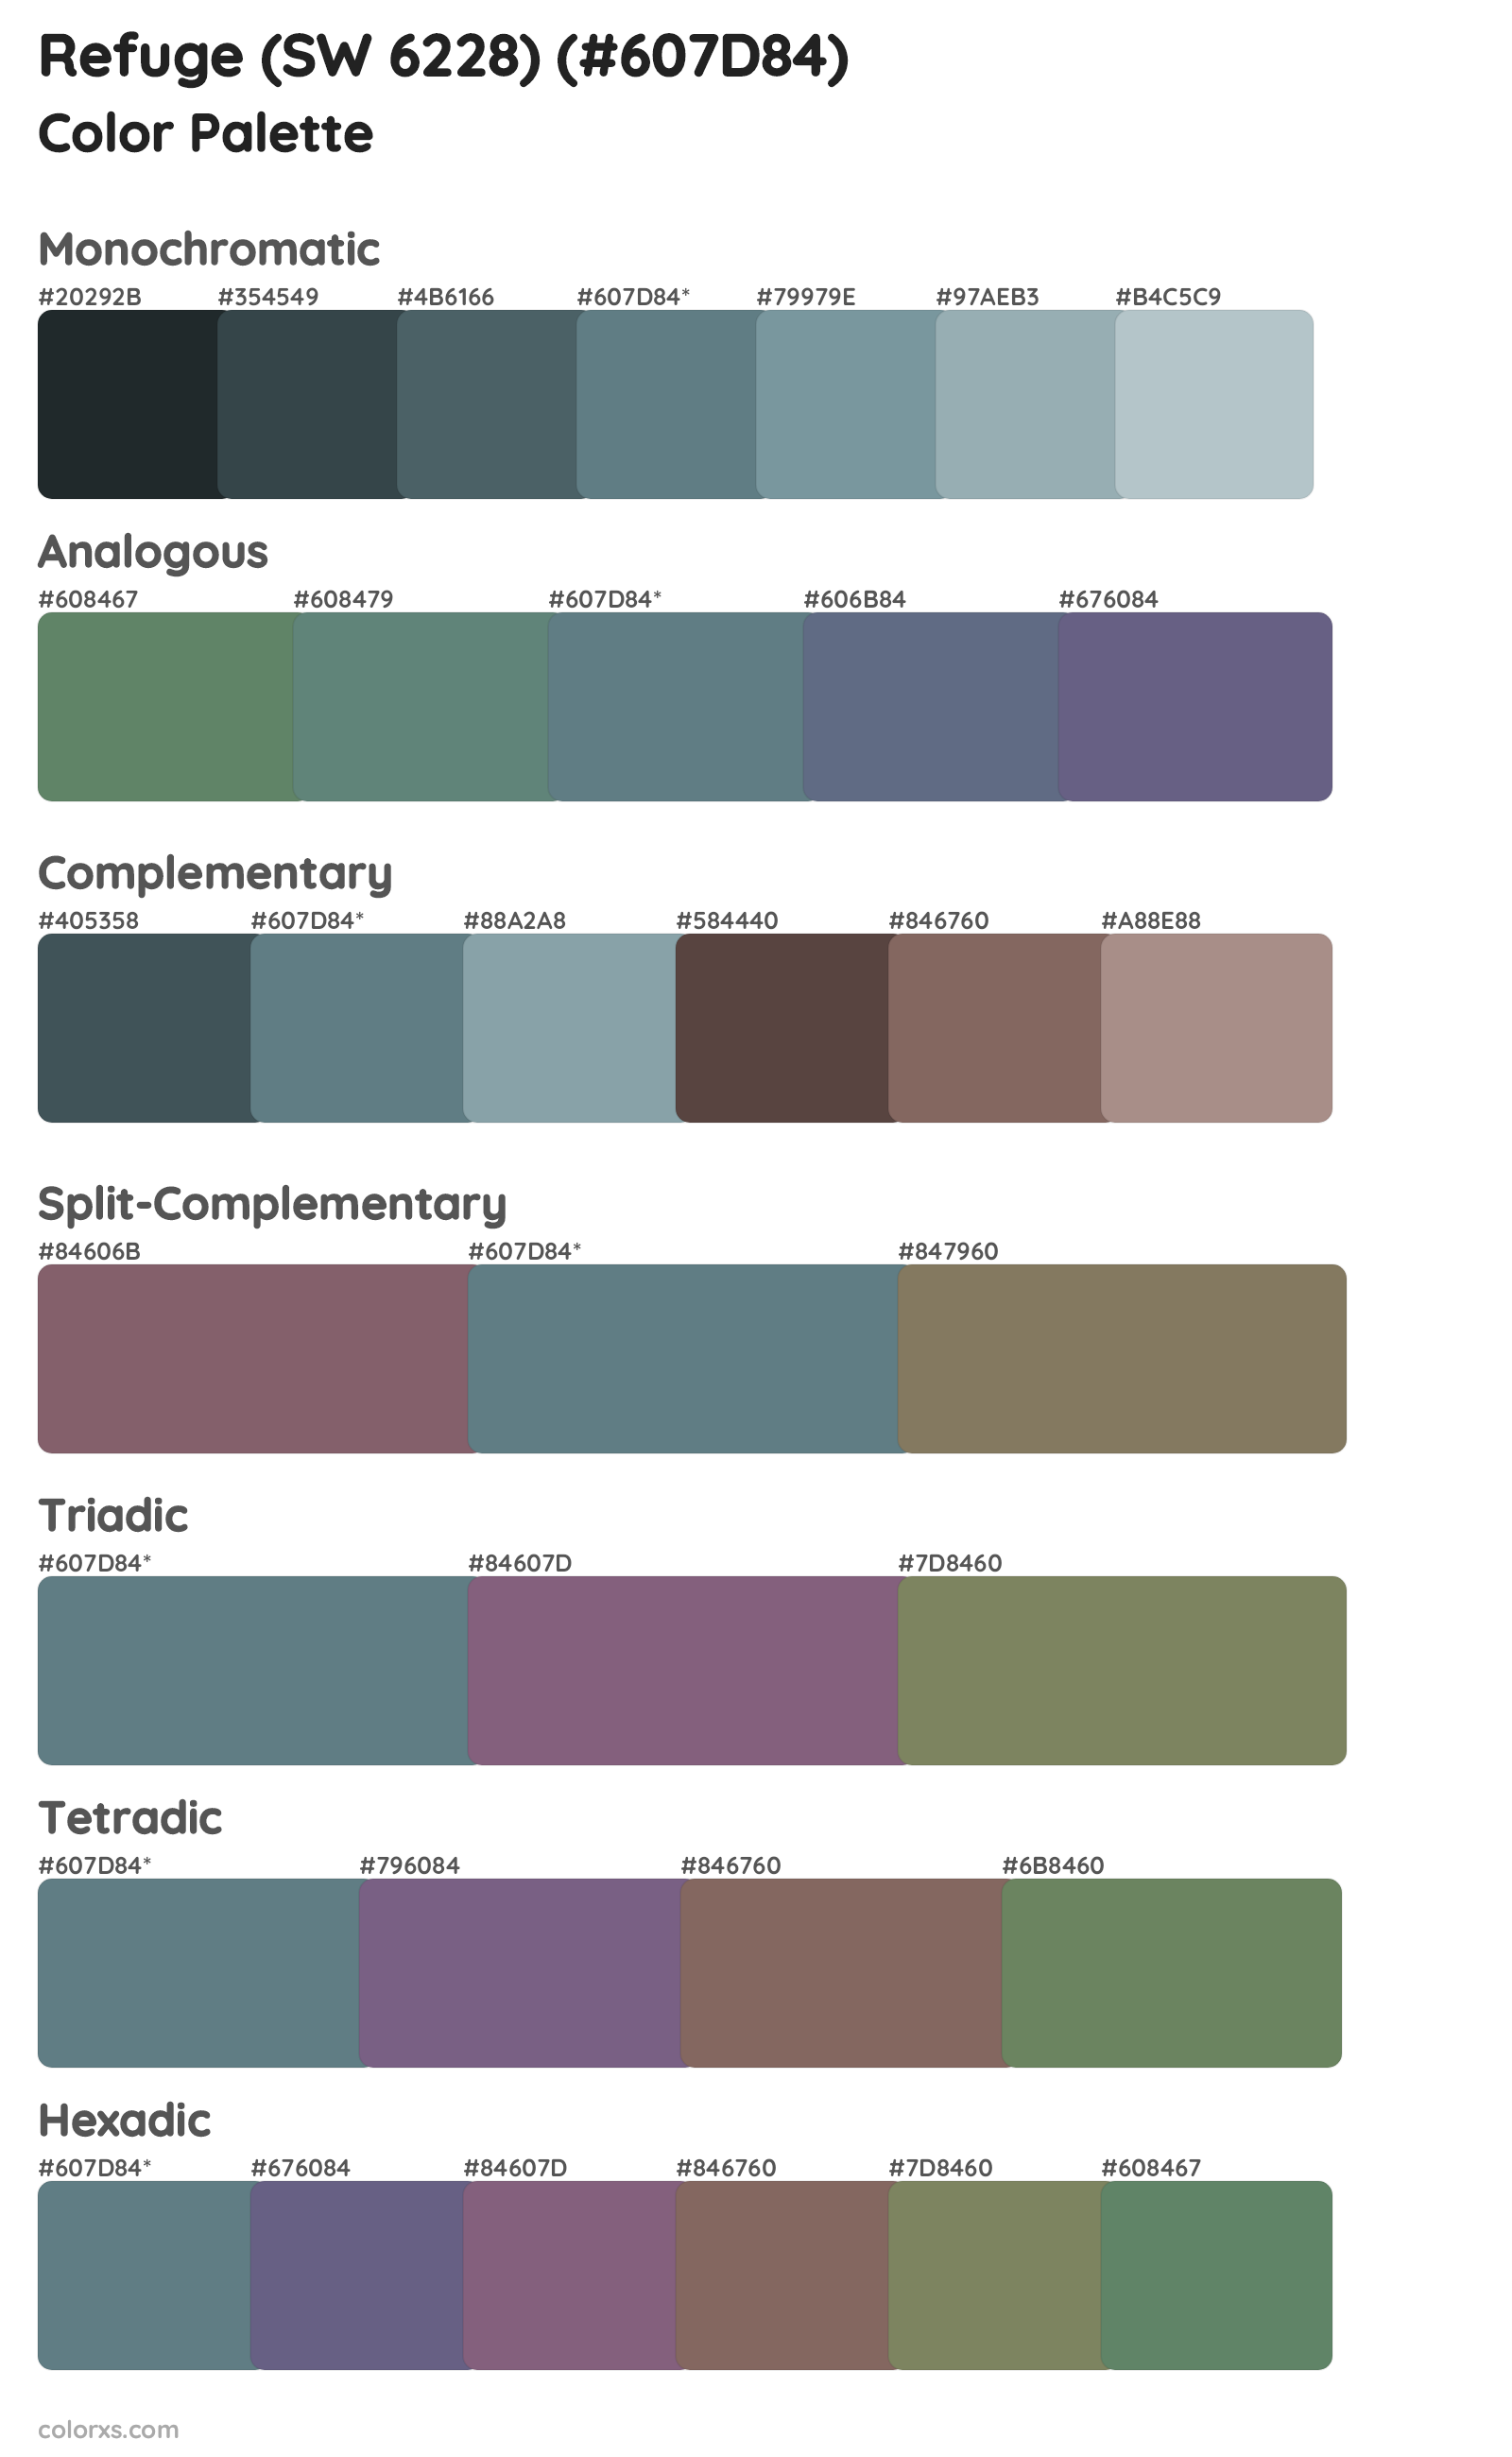 Refuge (SW 6228) Color Scheme Palettes